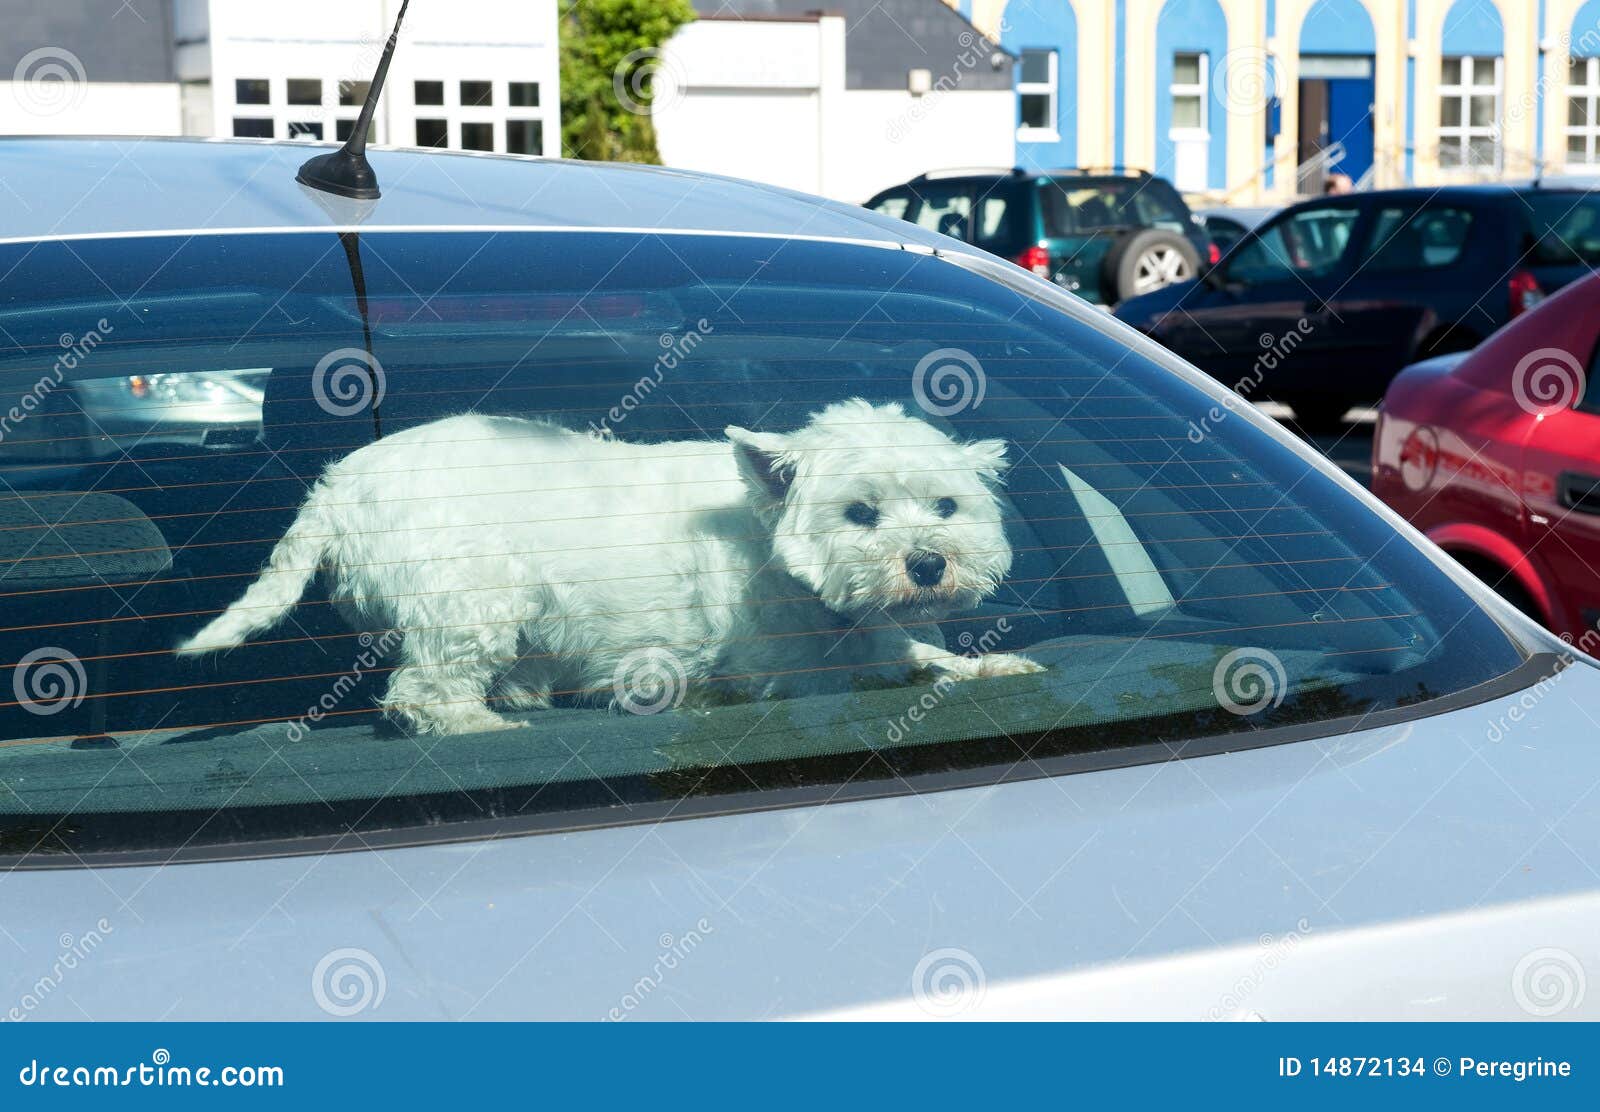 dog-car-rear-window-14872134.jpg